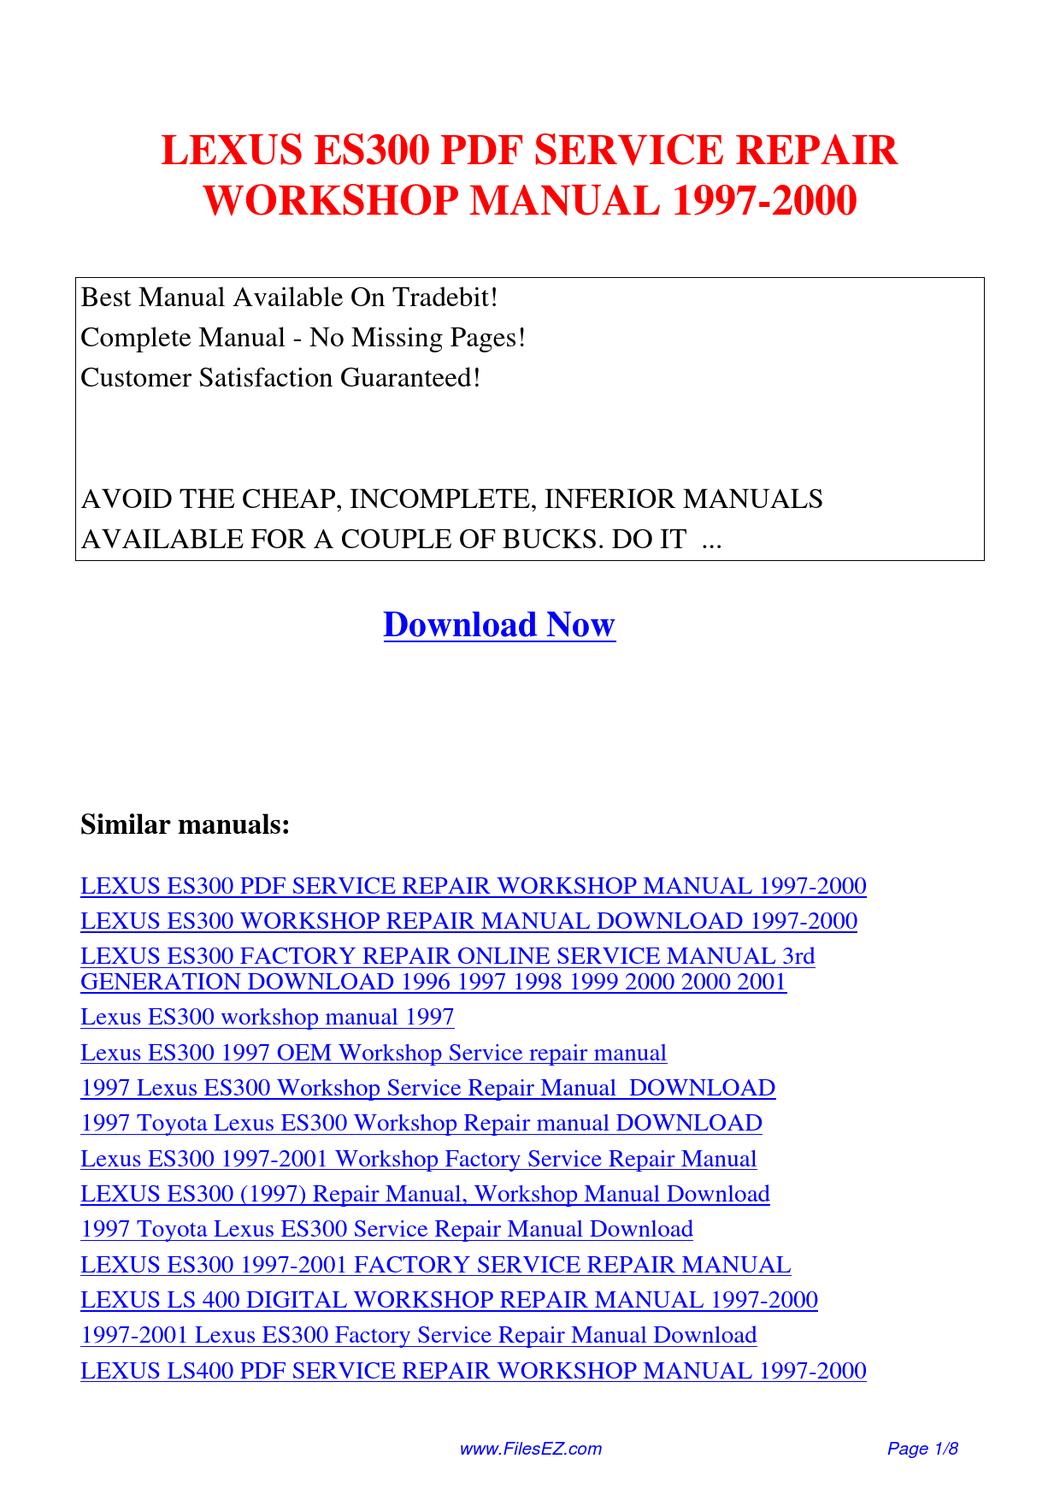 2001 lexus es300 repair manual pdf